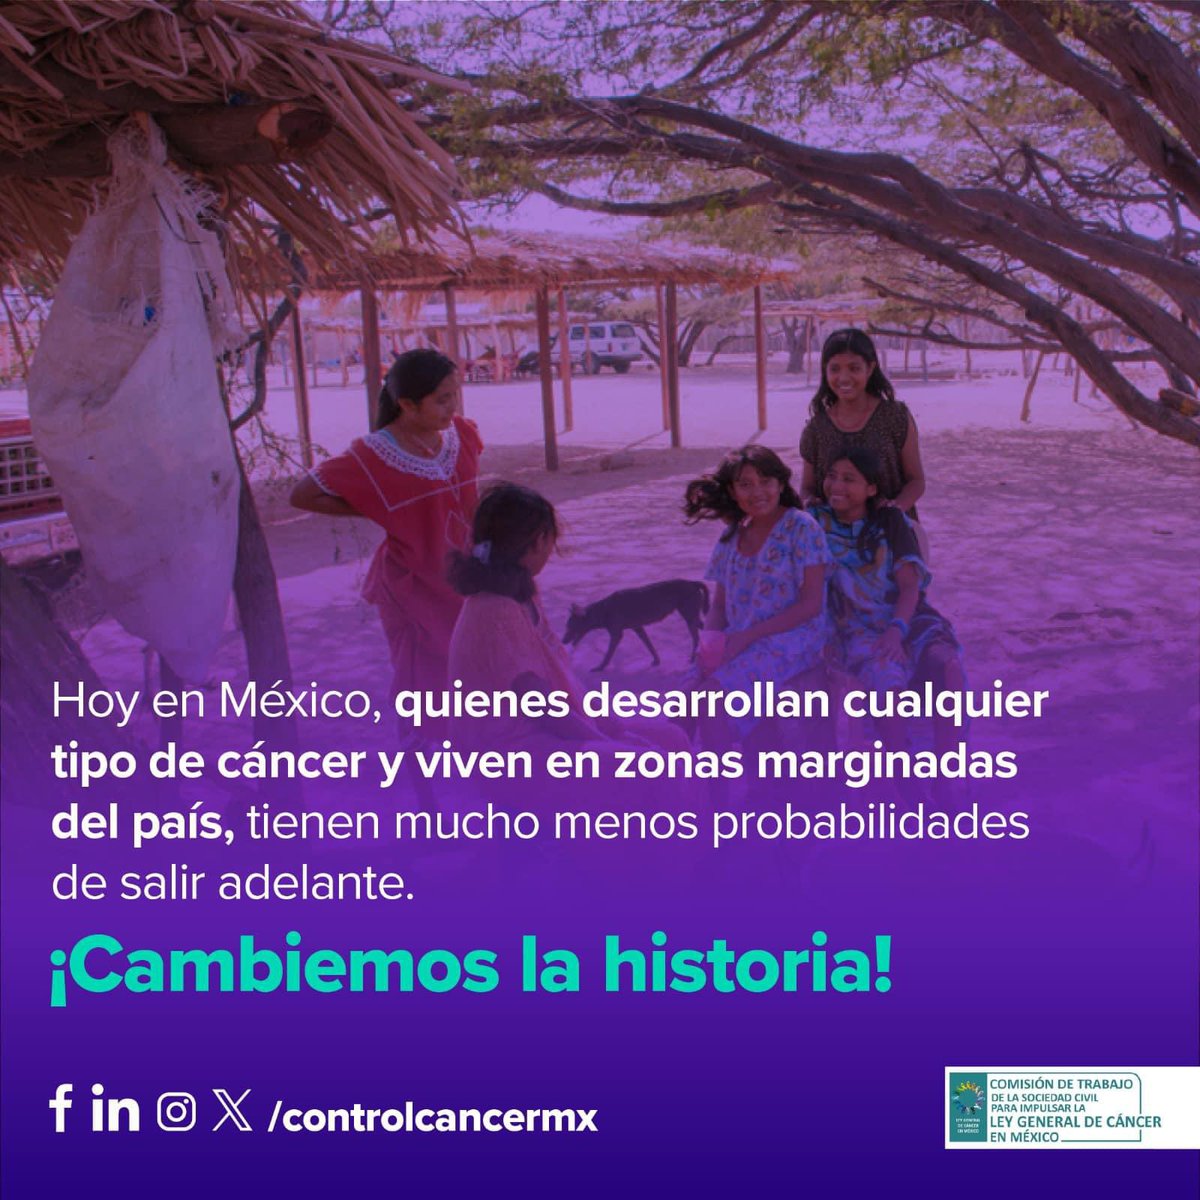 El cáncer no debe conocer desigualdades. En México, quienes viven en zonas marginadas enfrentan mayores desafíos. Con la #LeyGeneralDeCáncerMx 🇲🇽 podemos cambiar esta historia y asegurar un acceso equitativo a tratamientos.